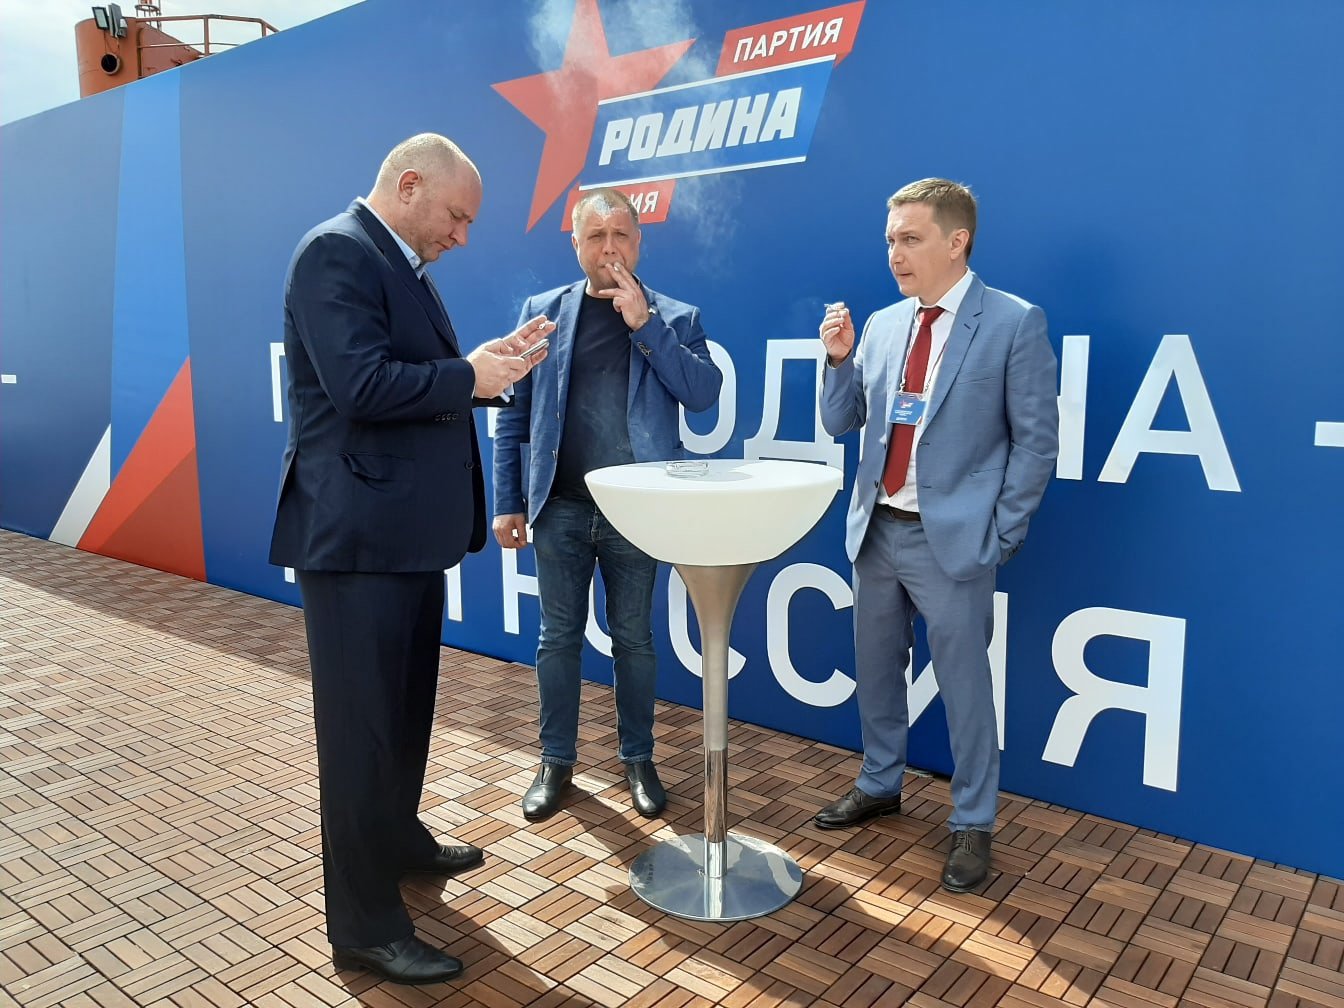 Александр Бородай (в центре) на съезде СДД и партии «Родина». Фото: Вконтакте